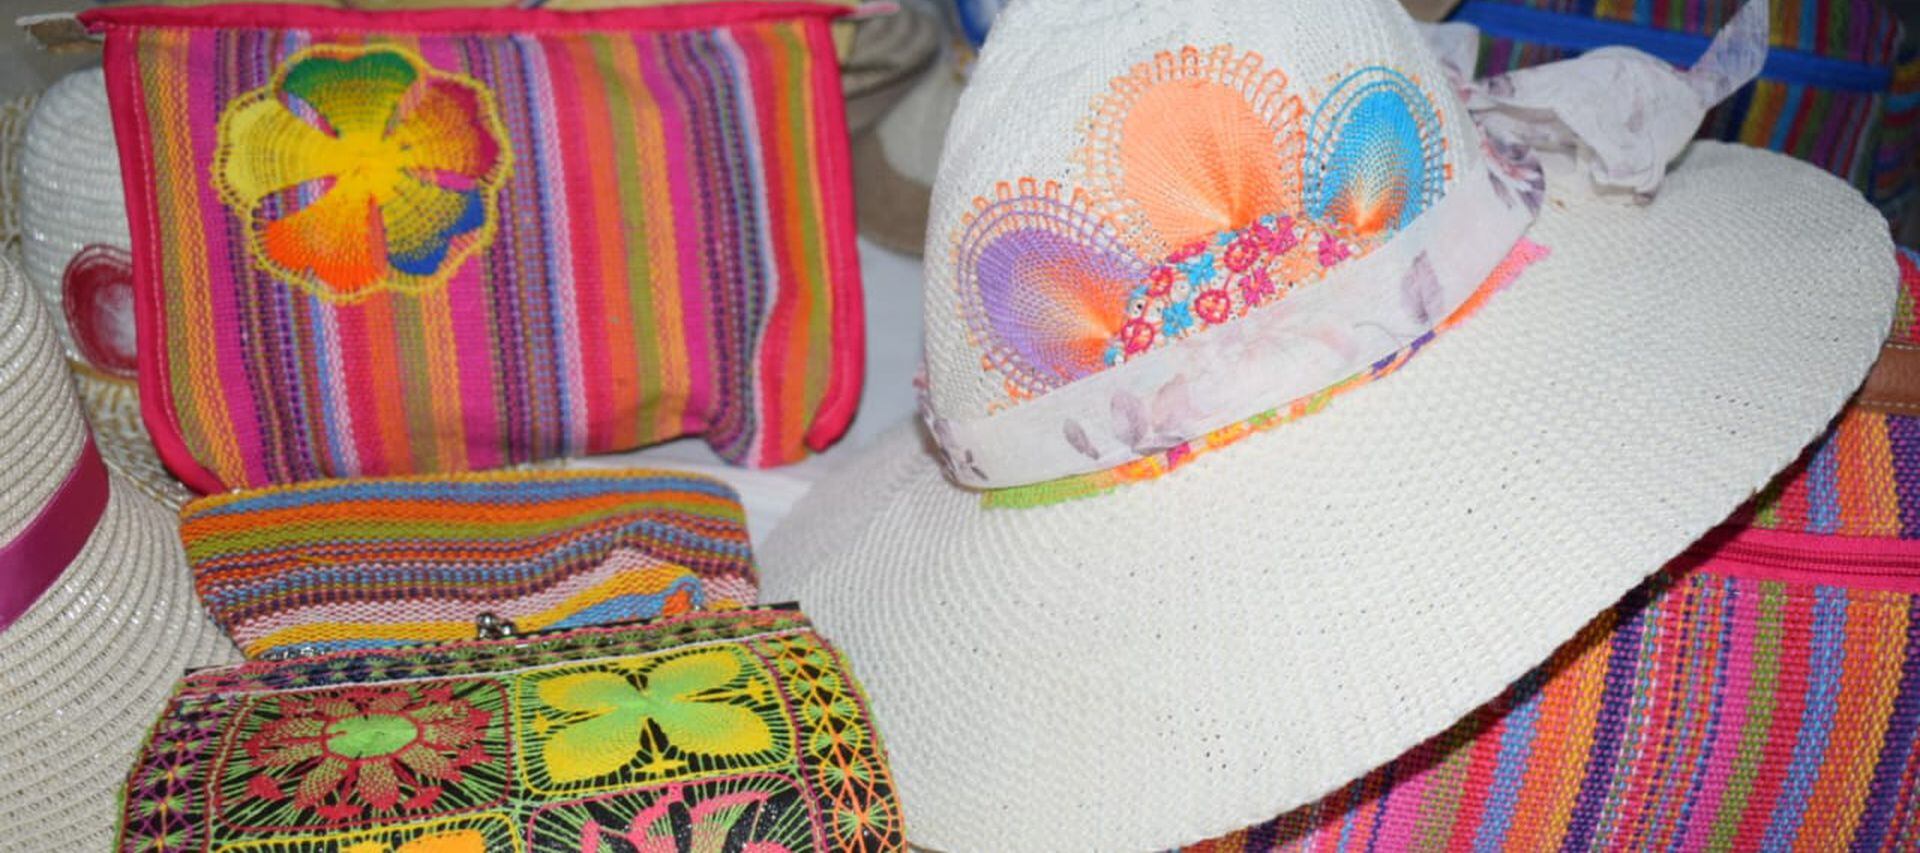 Artesanas de Itauguá exponen en la noche bellos artículos de Ñandutí, como carteras, sombreros, billeteras, aros, llaveros, termos, manteles, banderas, prendas de vestir, calzados y otros.